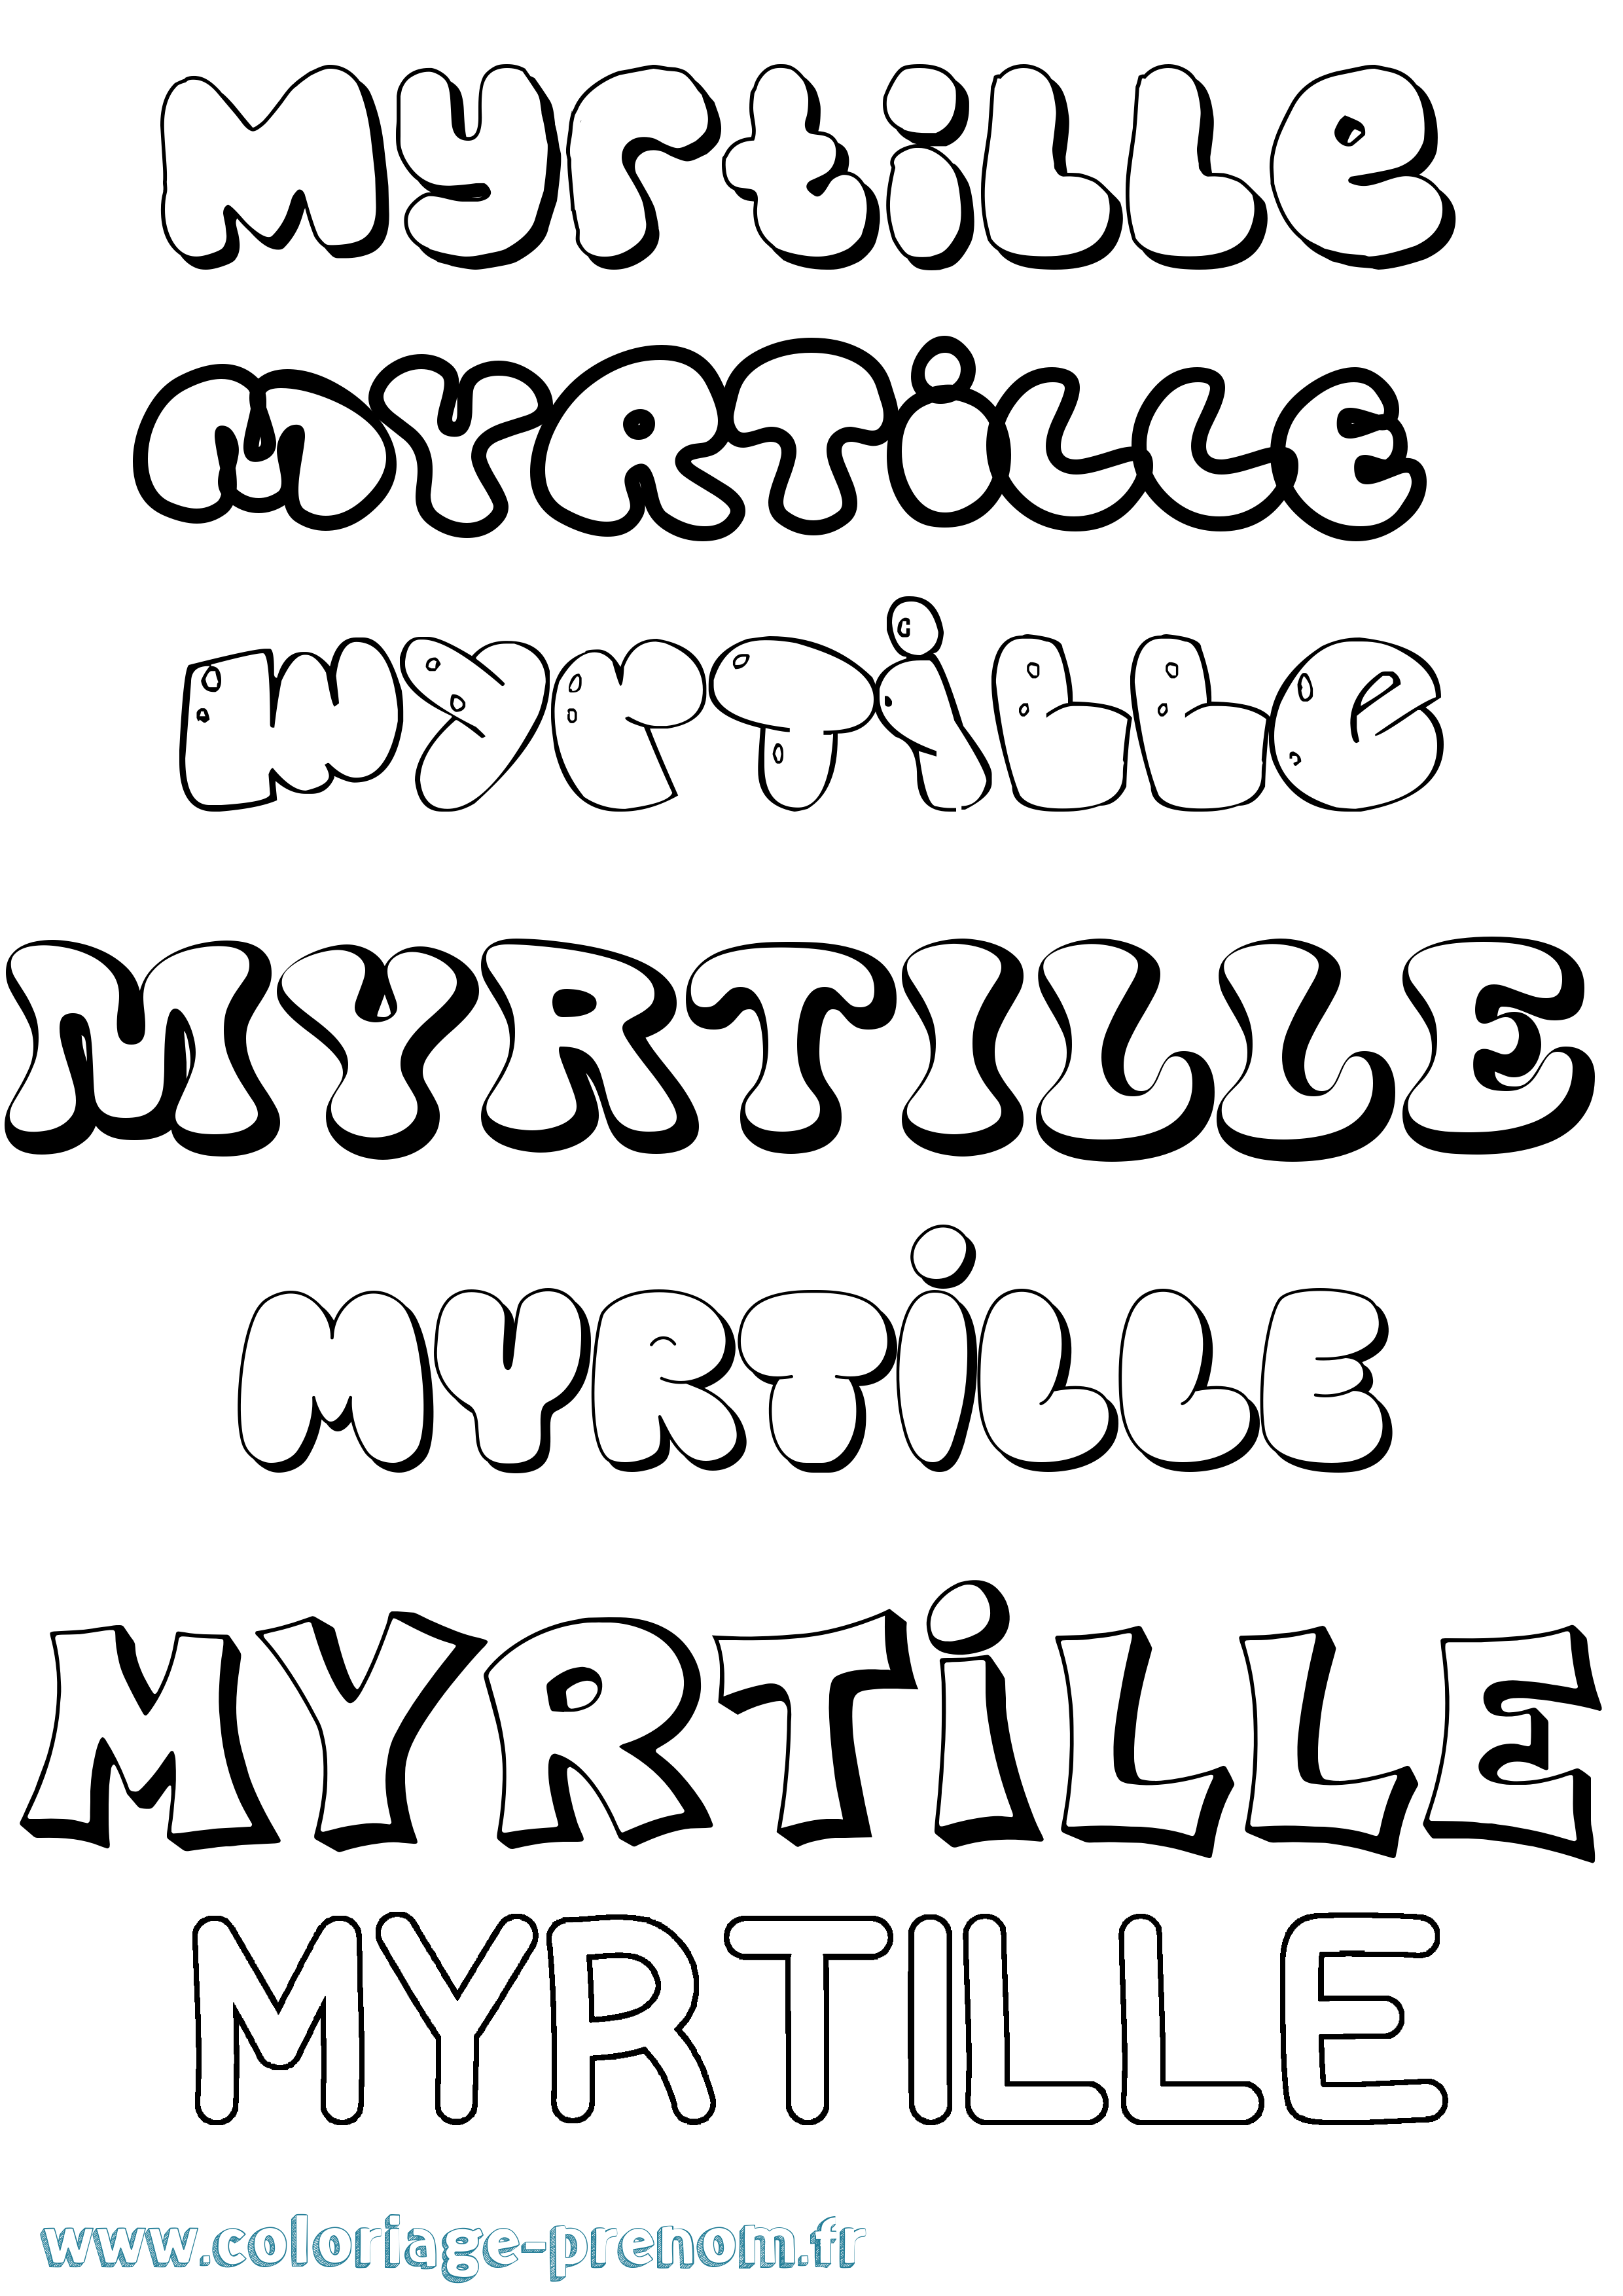 Coloriage prénom Myrtille Bubble